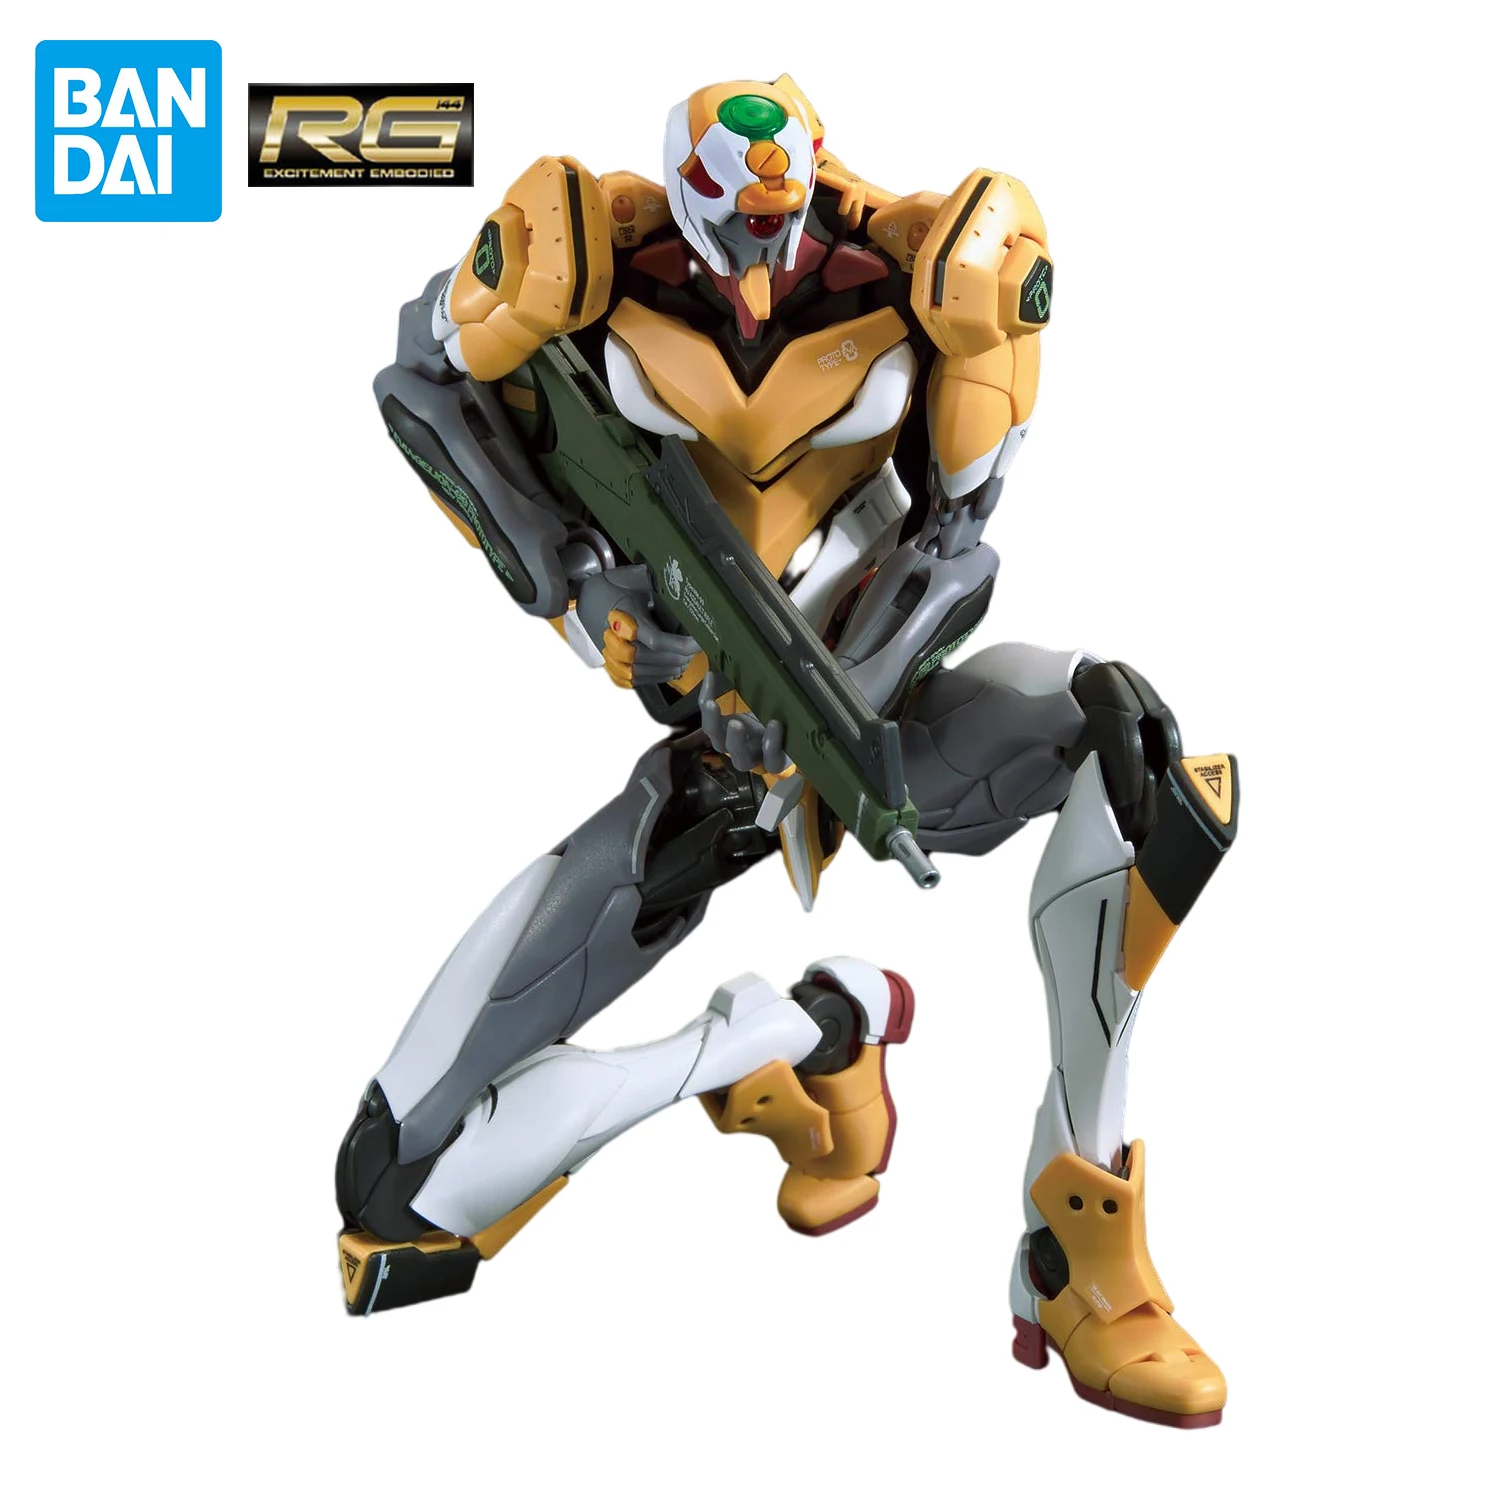 

Bandai Neon Genesis Evangelion Rg 1/144 Unit-00 Dx Positron Cannon Set Assemble Action Figure Collectible Model Toy Boy Gift